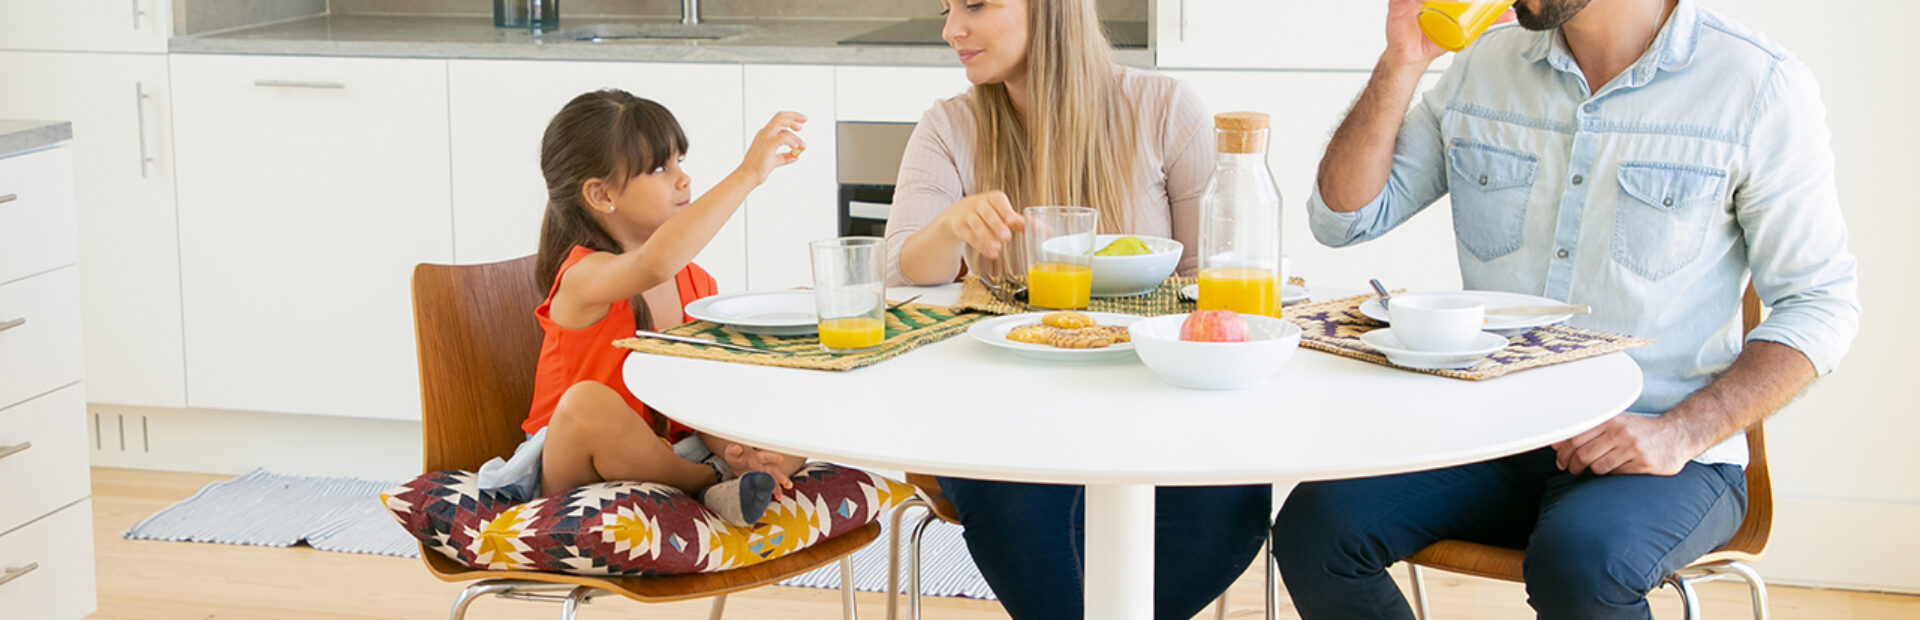 Alimentación Saludable: Una forma entretenida de comer y compartir en familia